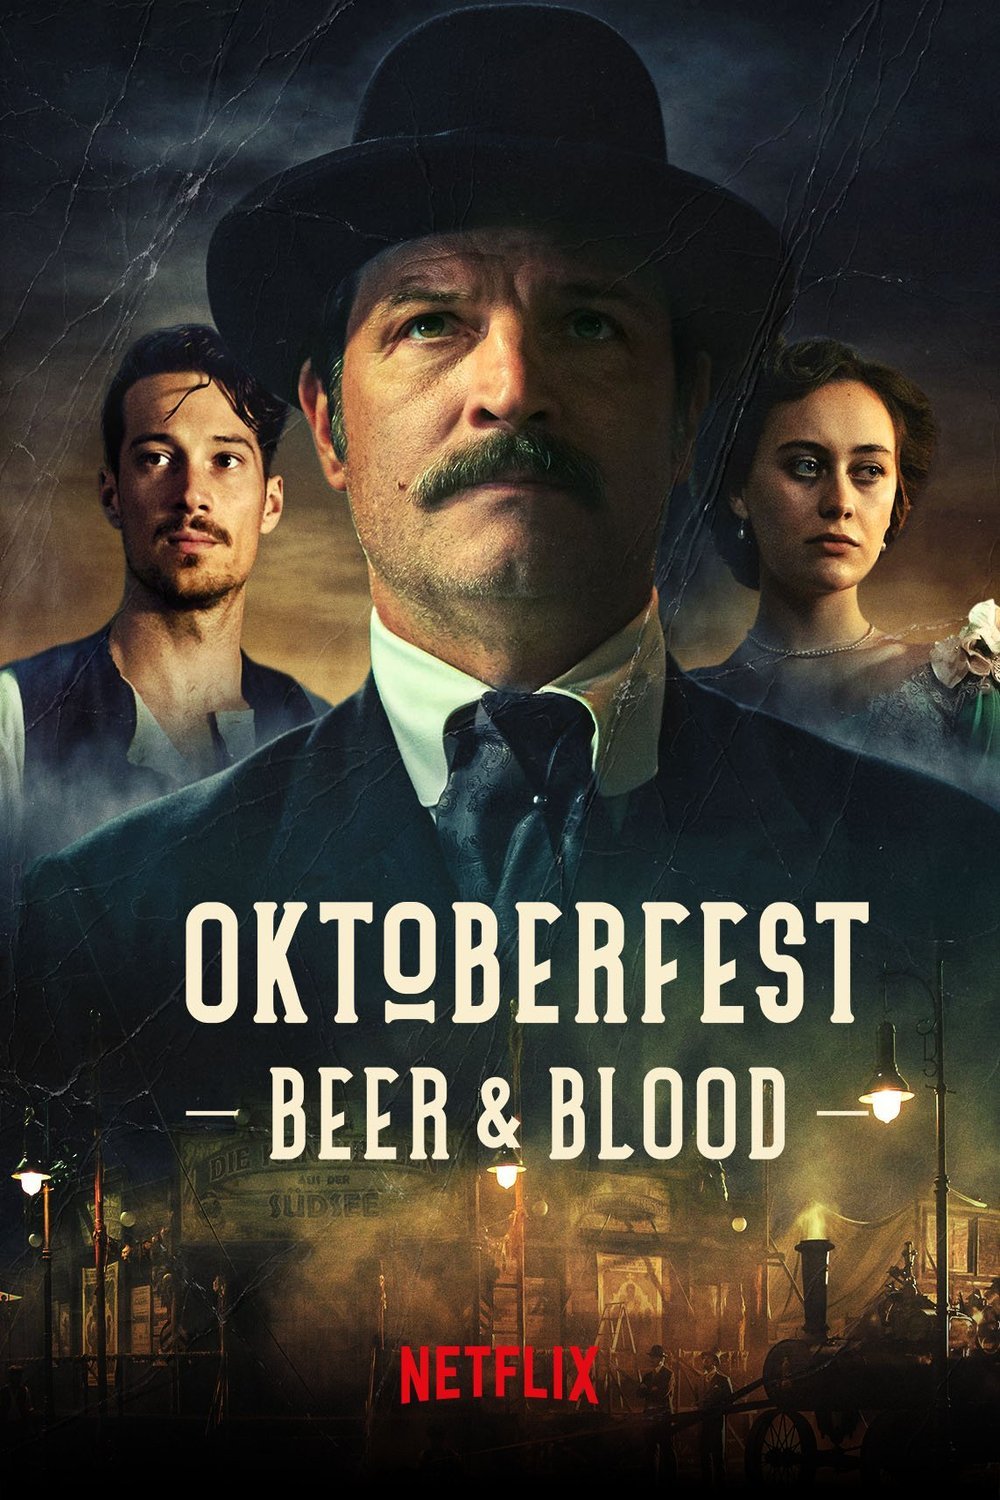 German poster of the movie Oktoberfest: Beer & Blood